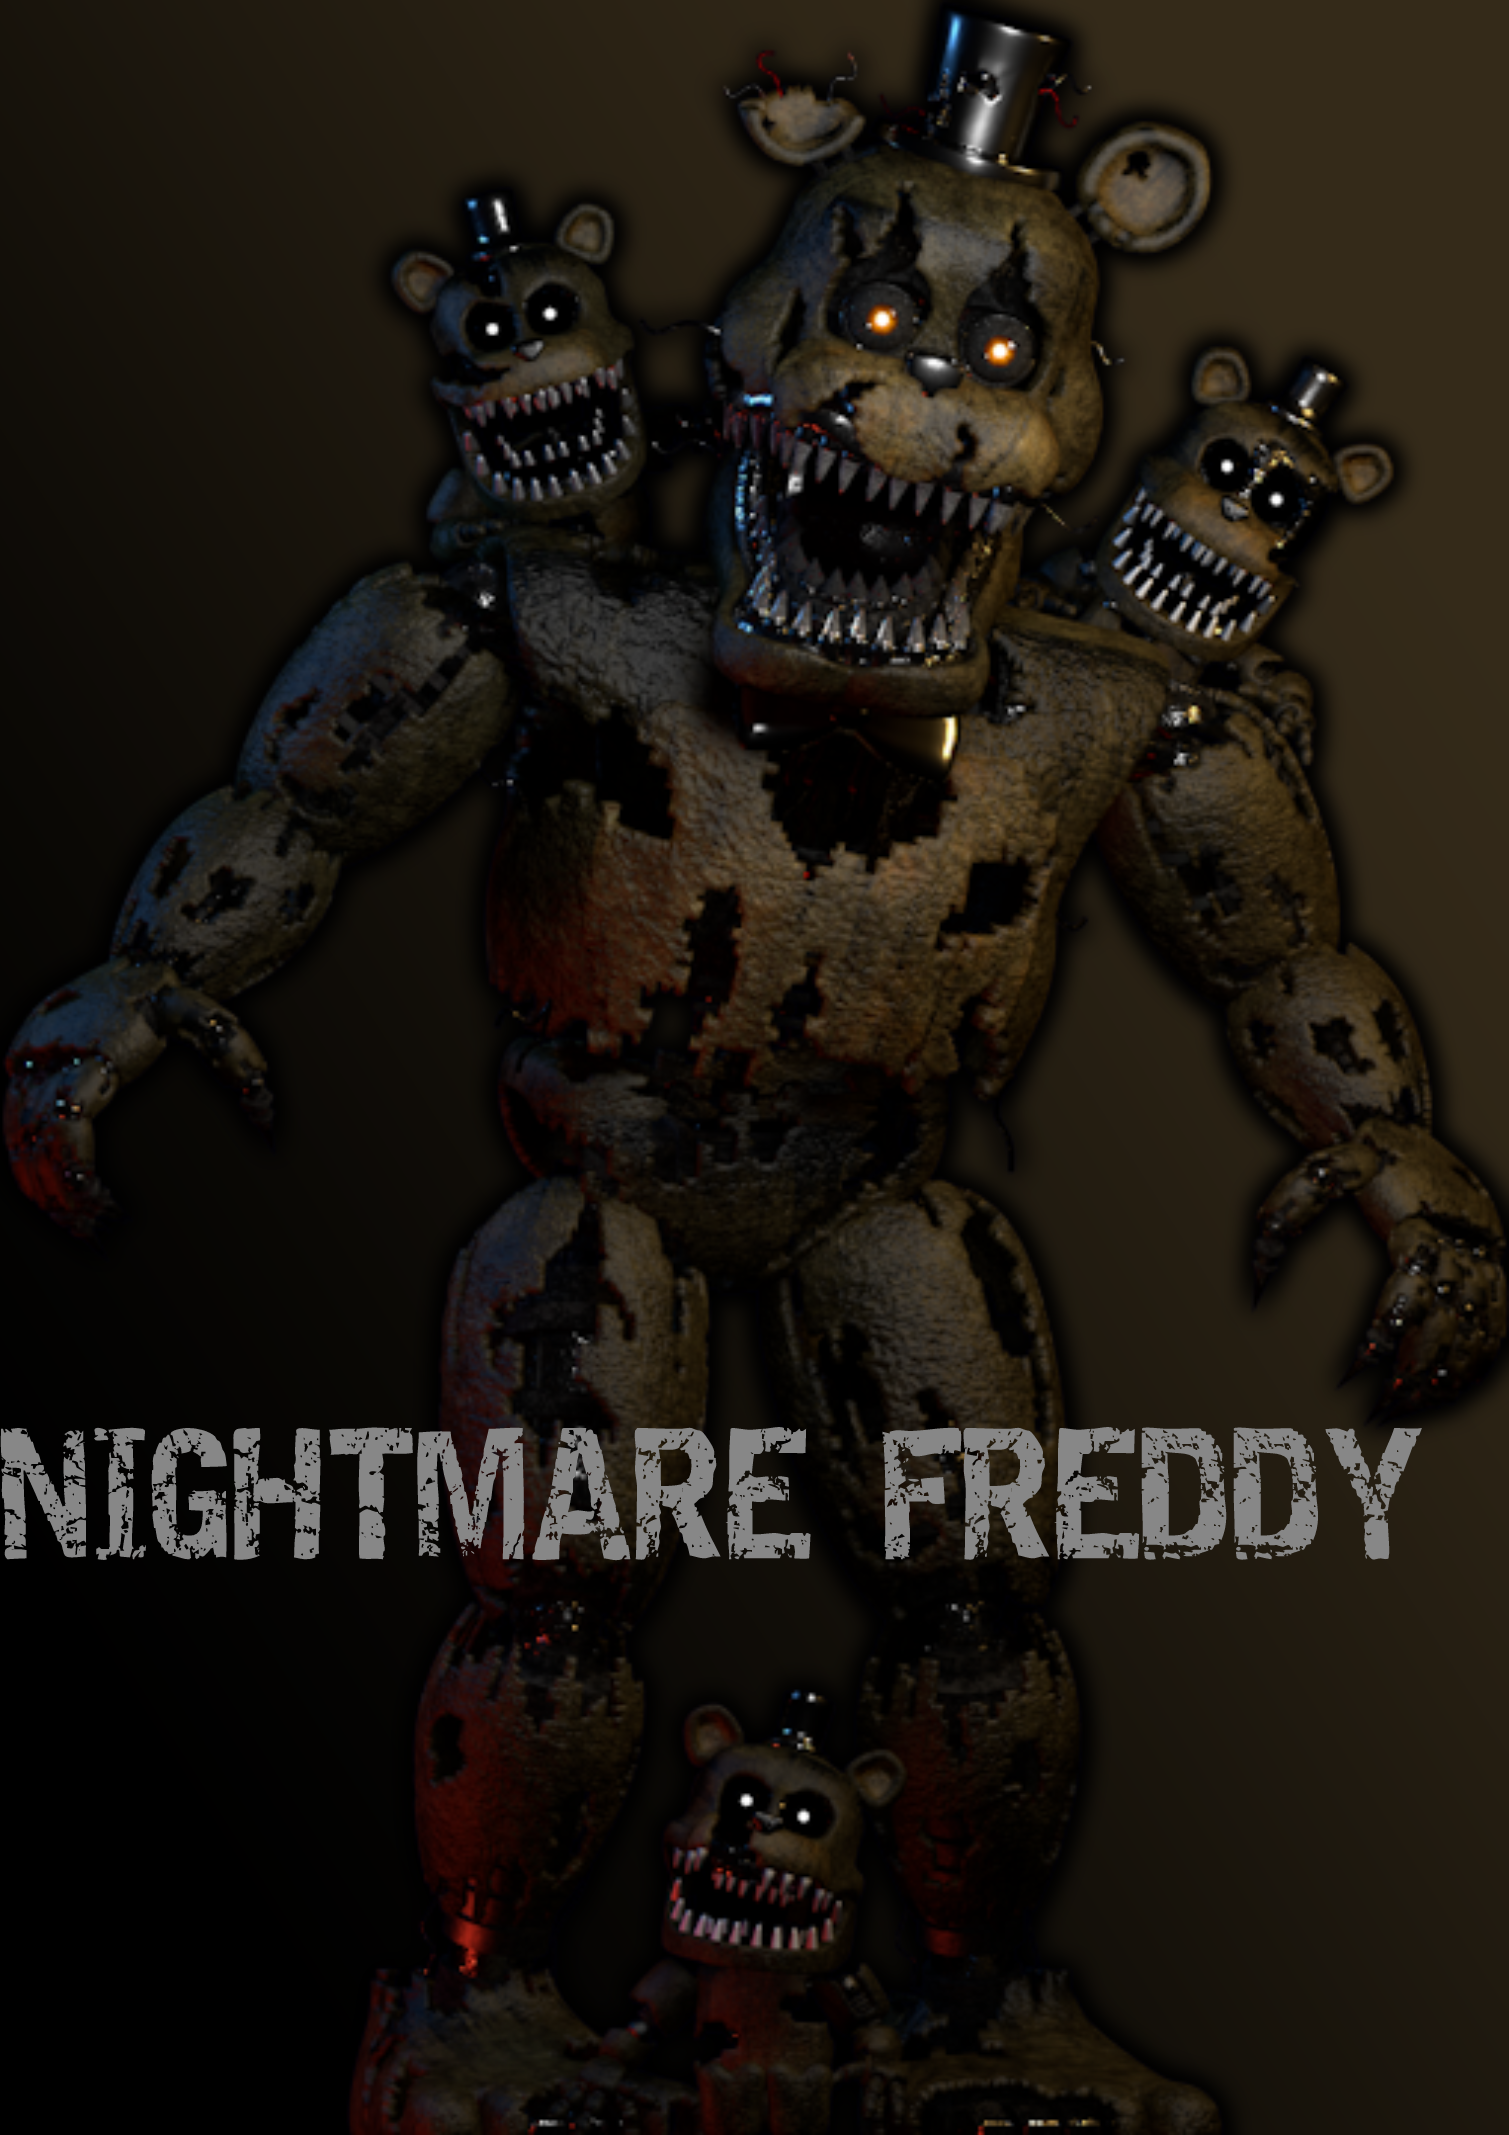 FNaF 4 Edit Nightmare Shadow Freddy by Leftylol on DeviantArt